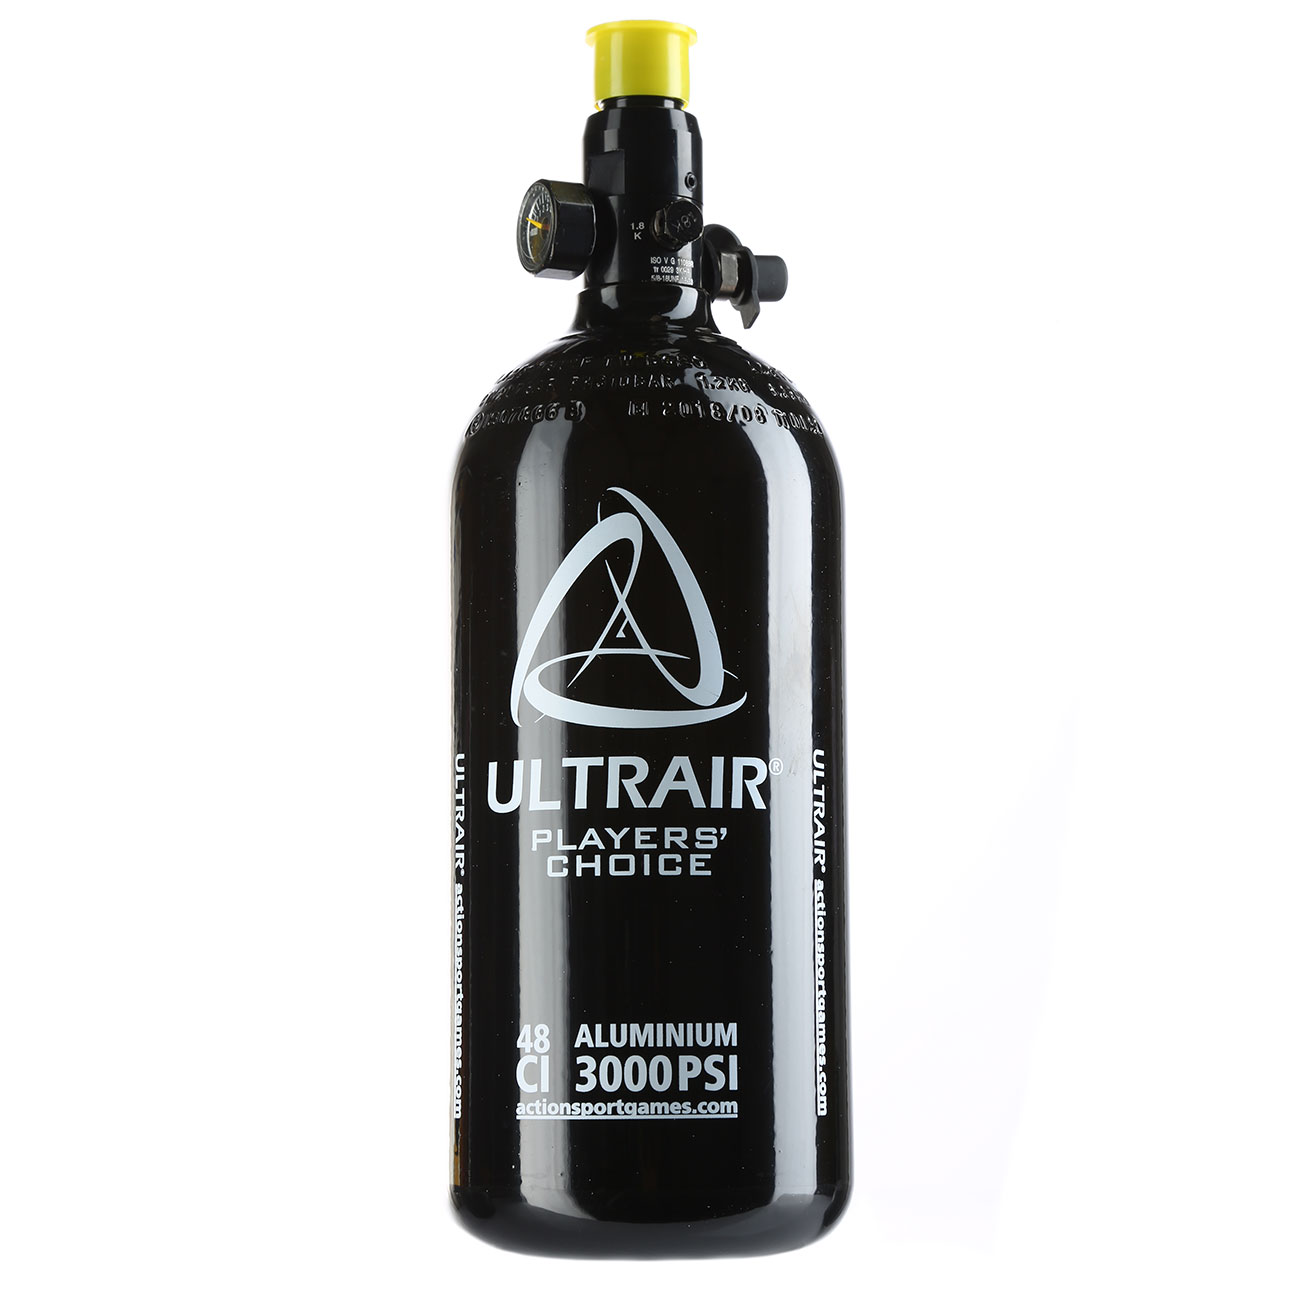 Ultrair HPA tank, 0,8 liter, 48ci, 3000 psi, aluminium, incl. regulator